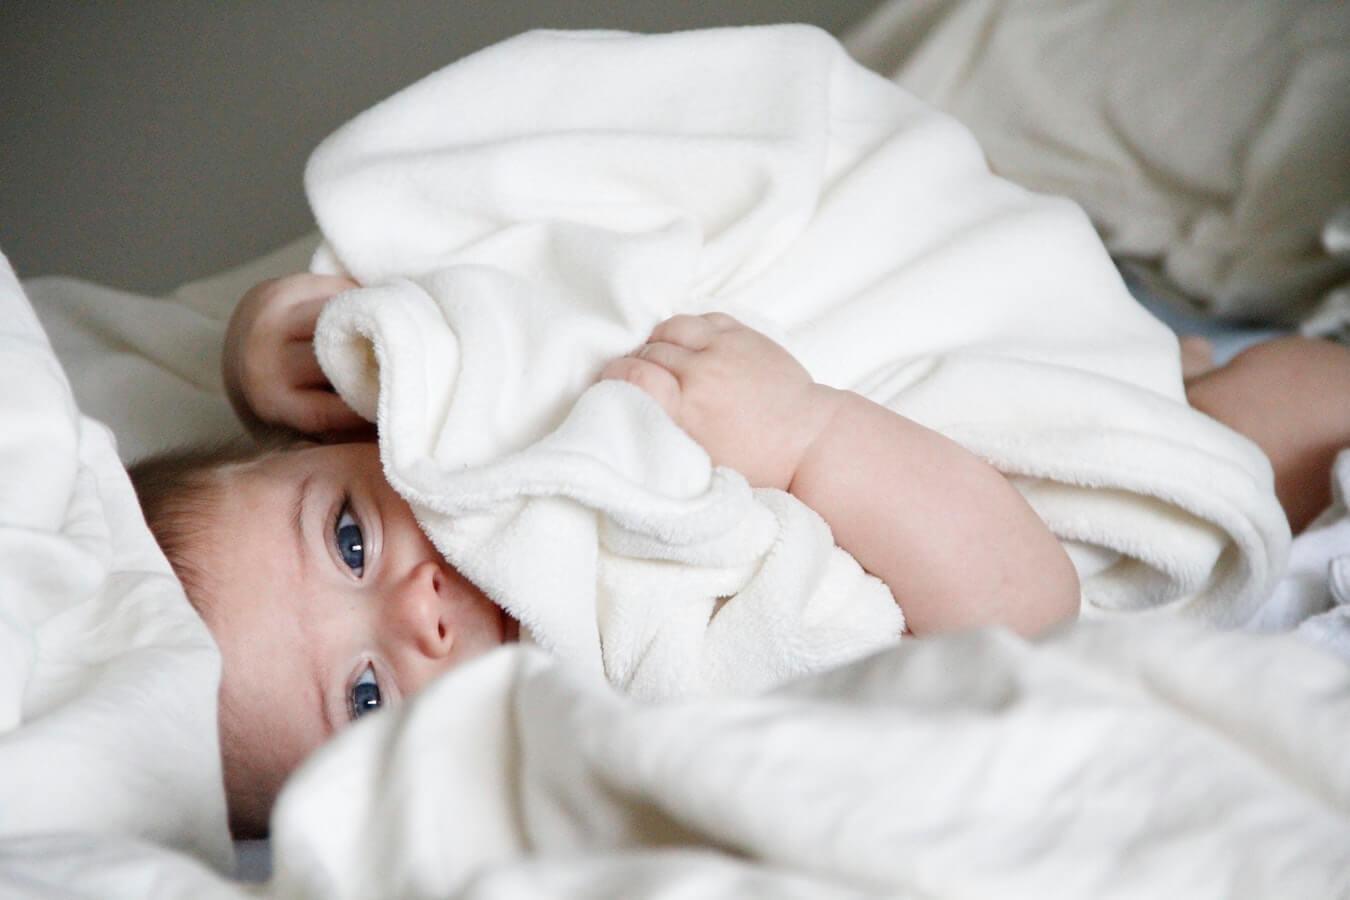 Las mejores alfombras puzle para bebés • CompraMejor USA